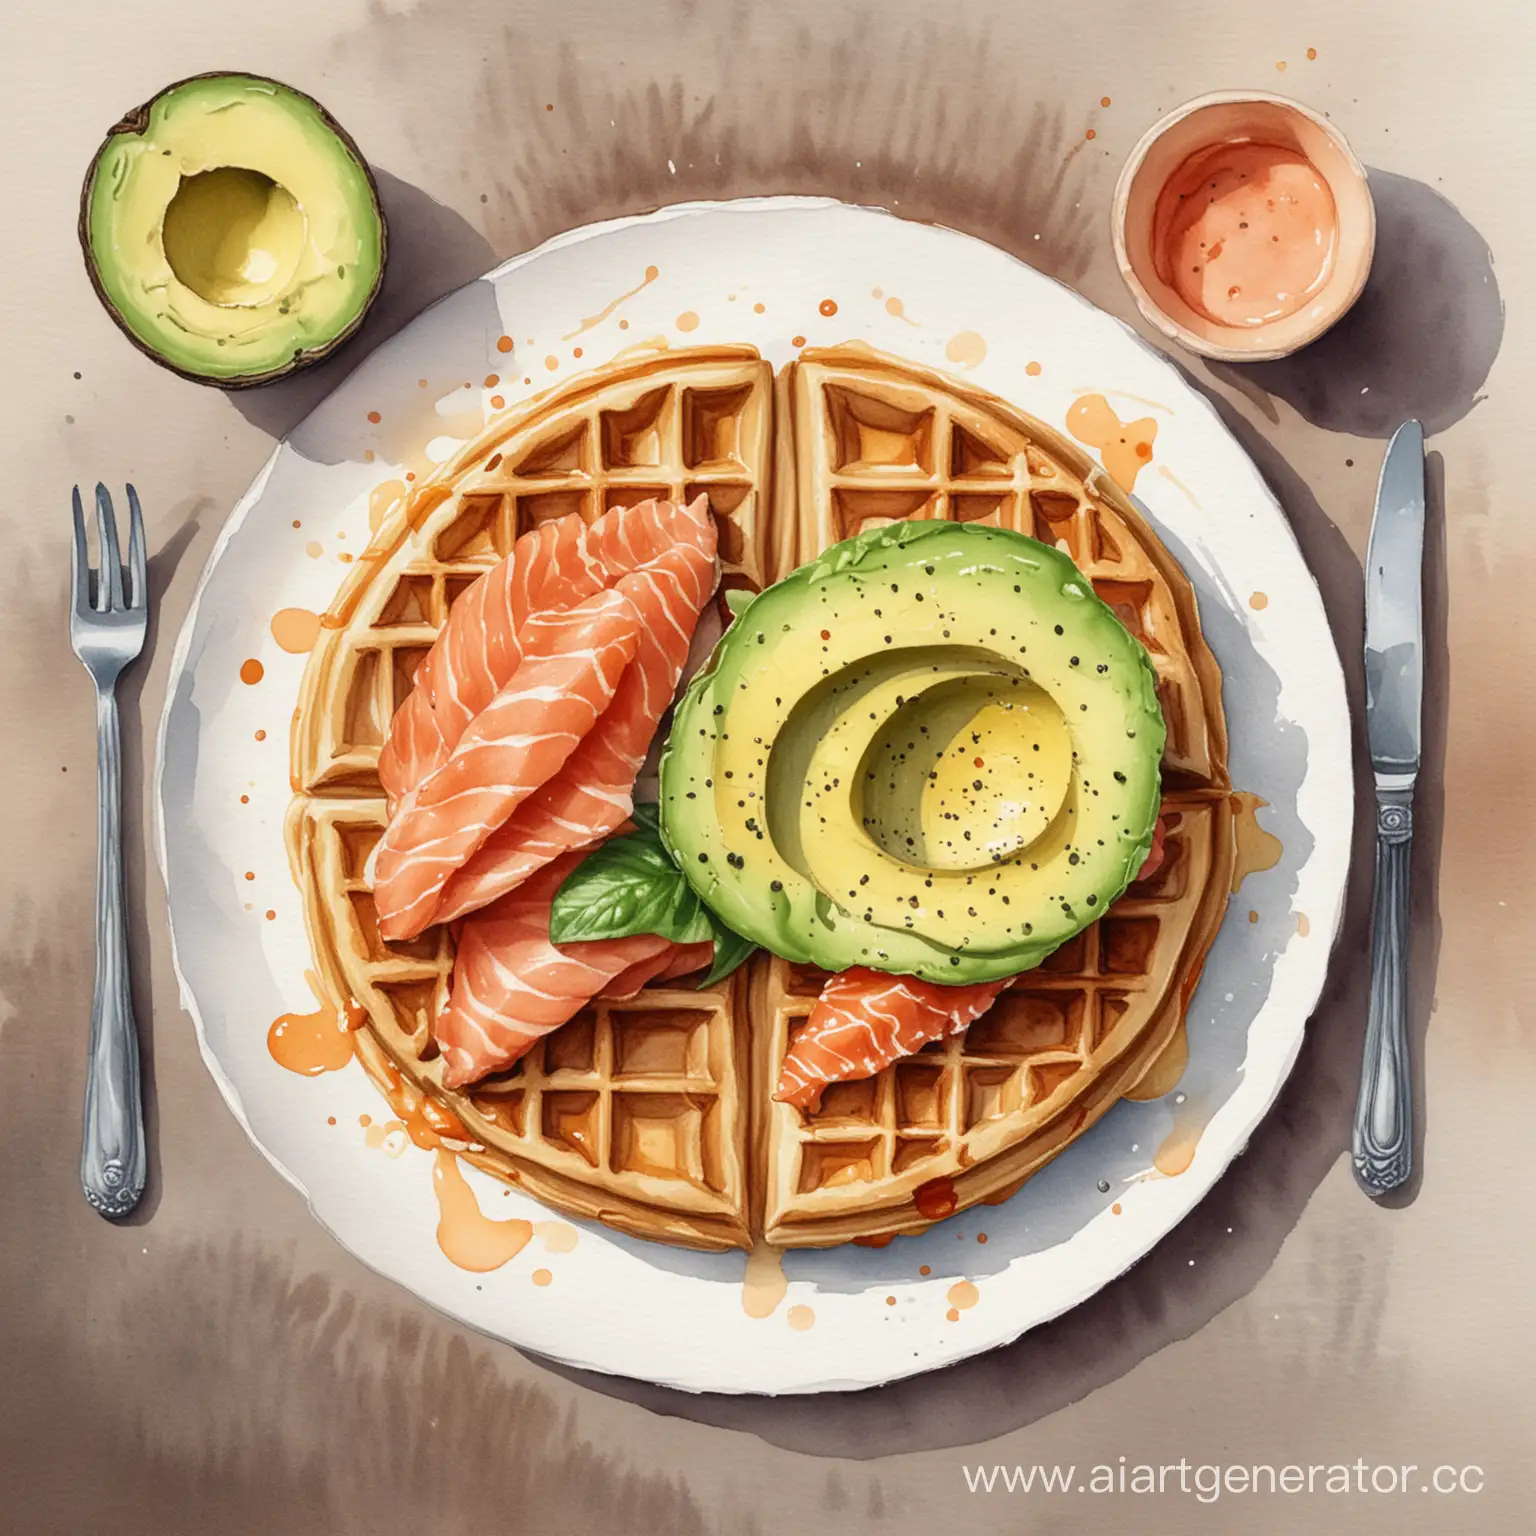 аквварельный рисунок завтрака из вафли с авокадо и семгой